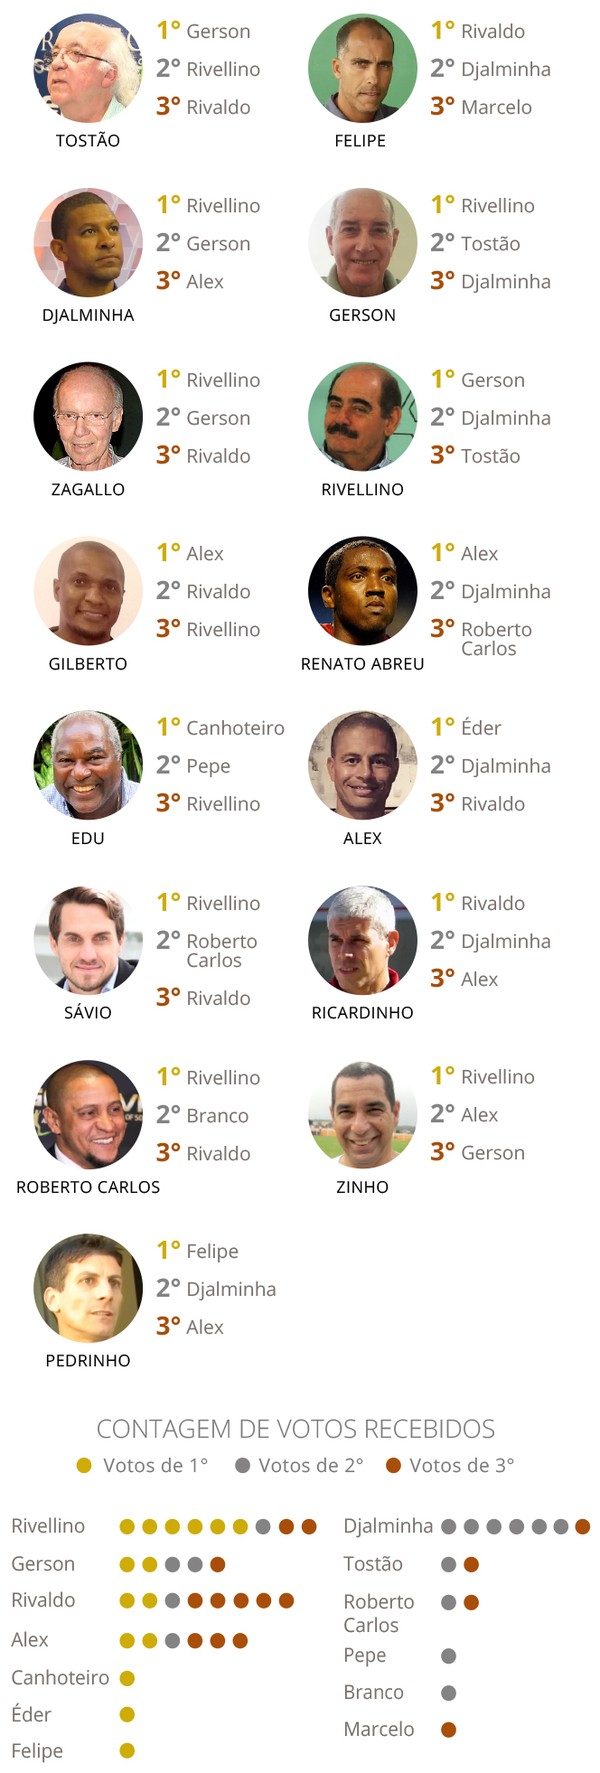 Quem são os melhores goleiros do Brasil na opinião dos próprios